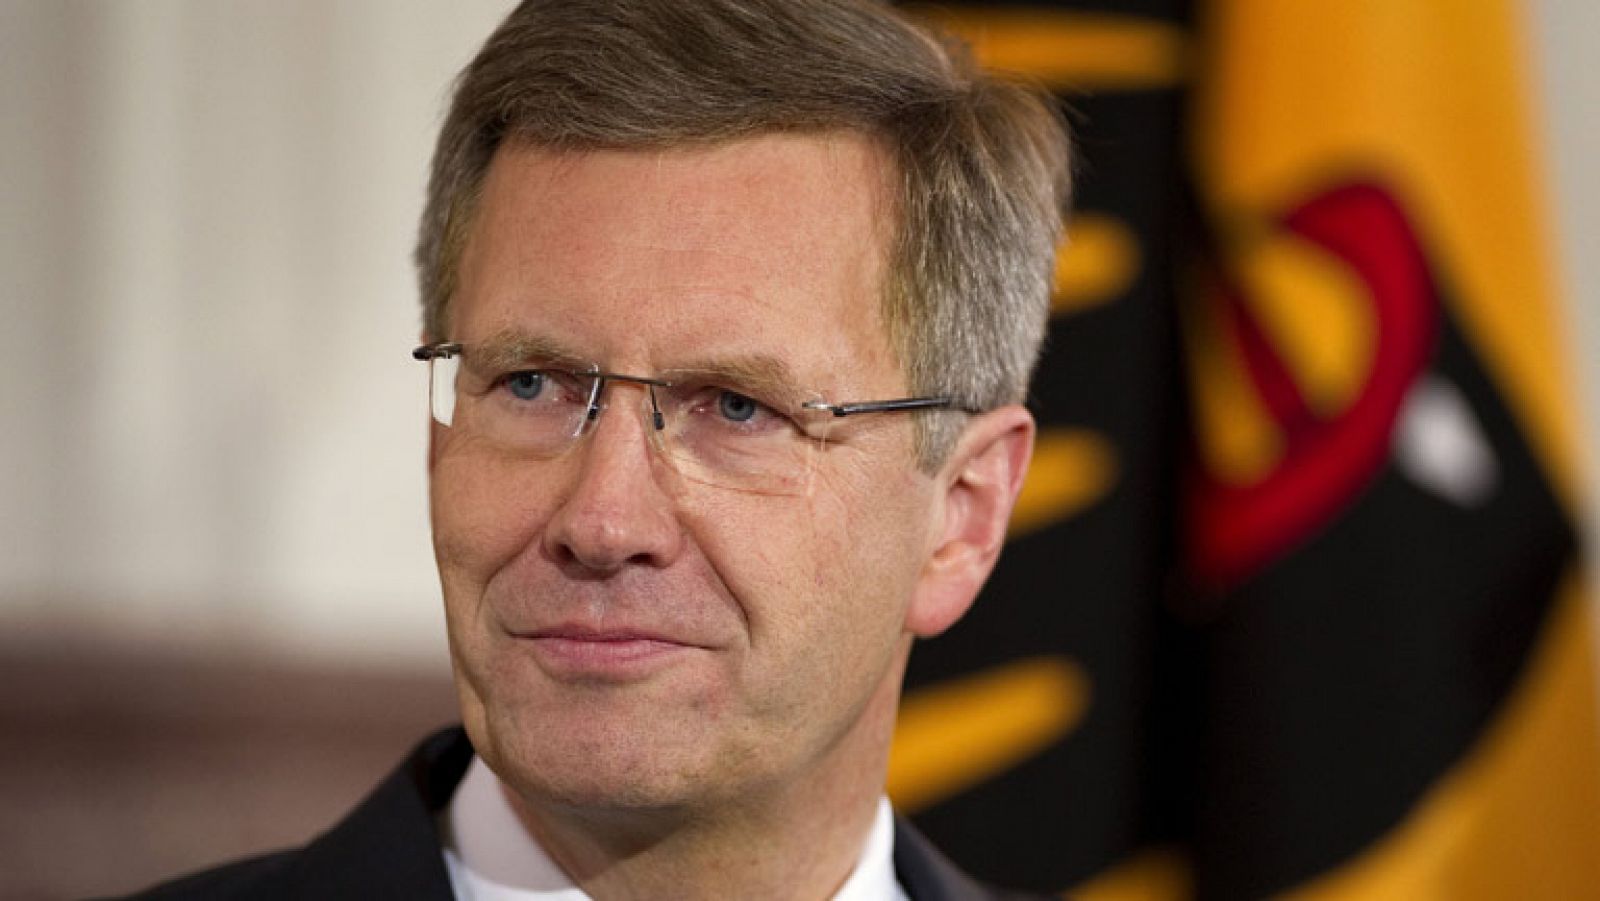 El presidente alemán comparecerá tras la petición de la fiscalía de retirar su inmunidad